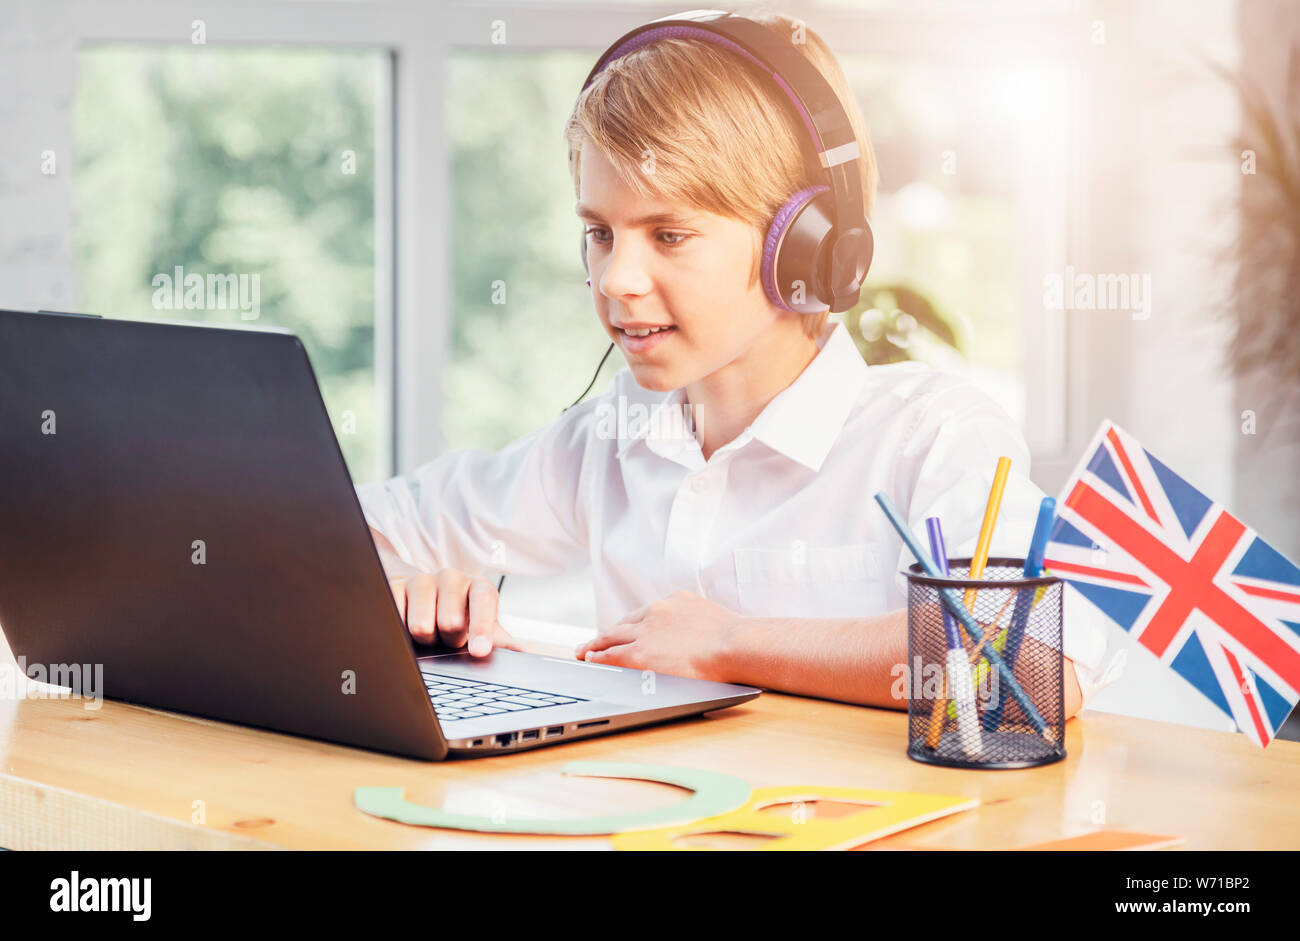 Giovani schoolboy stydying inglese online utilizzando laptop Foto Stock